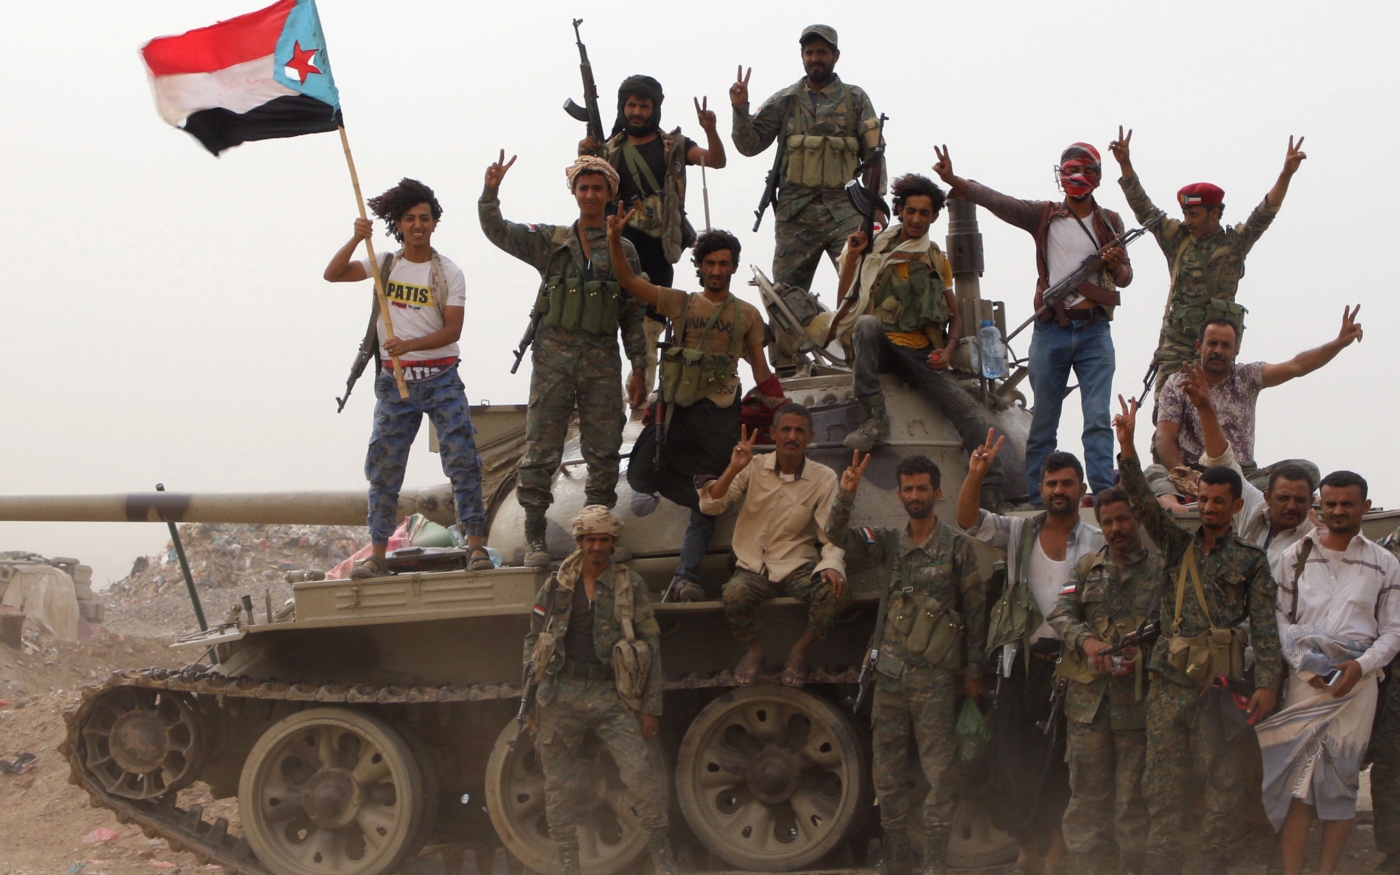 Des membres des forces séparatistes du sud du Yémen soutenues par les Émirats arabes unis se tiennent sur un char lors d’affrontements avec les forces gouvernementales à Aden, le 10 août (Reuters)